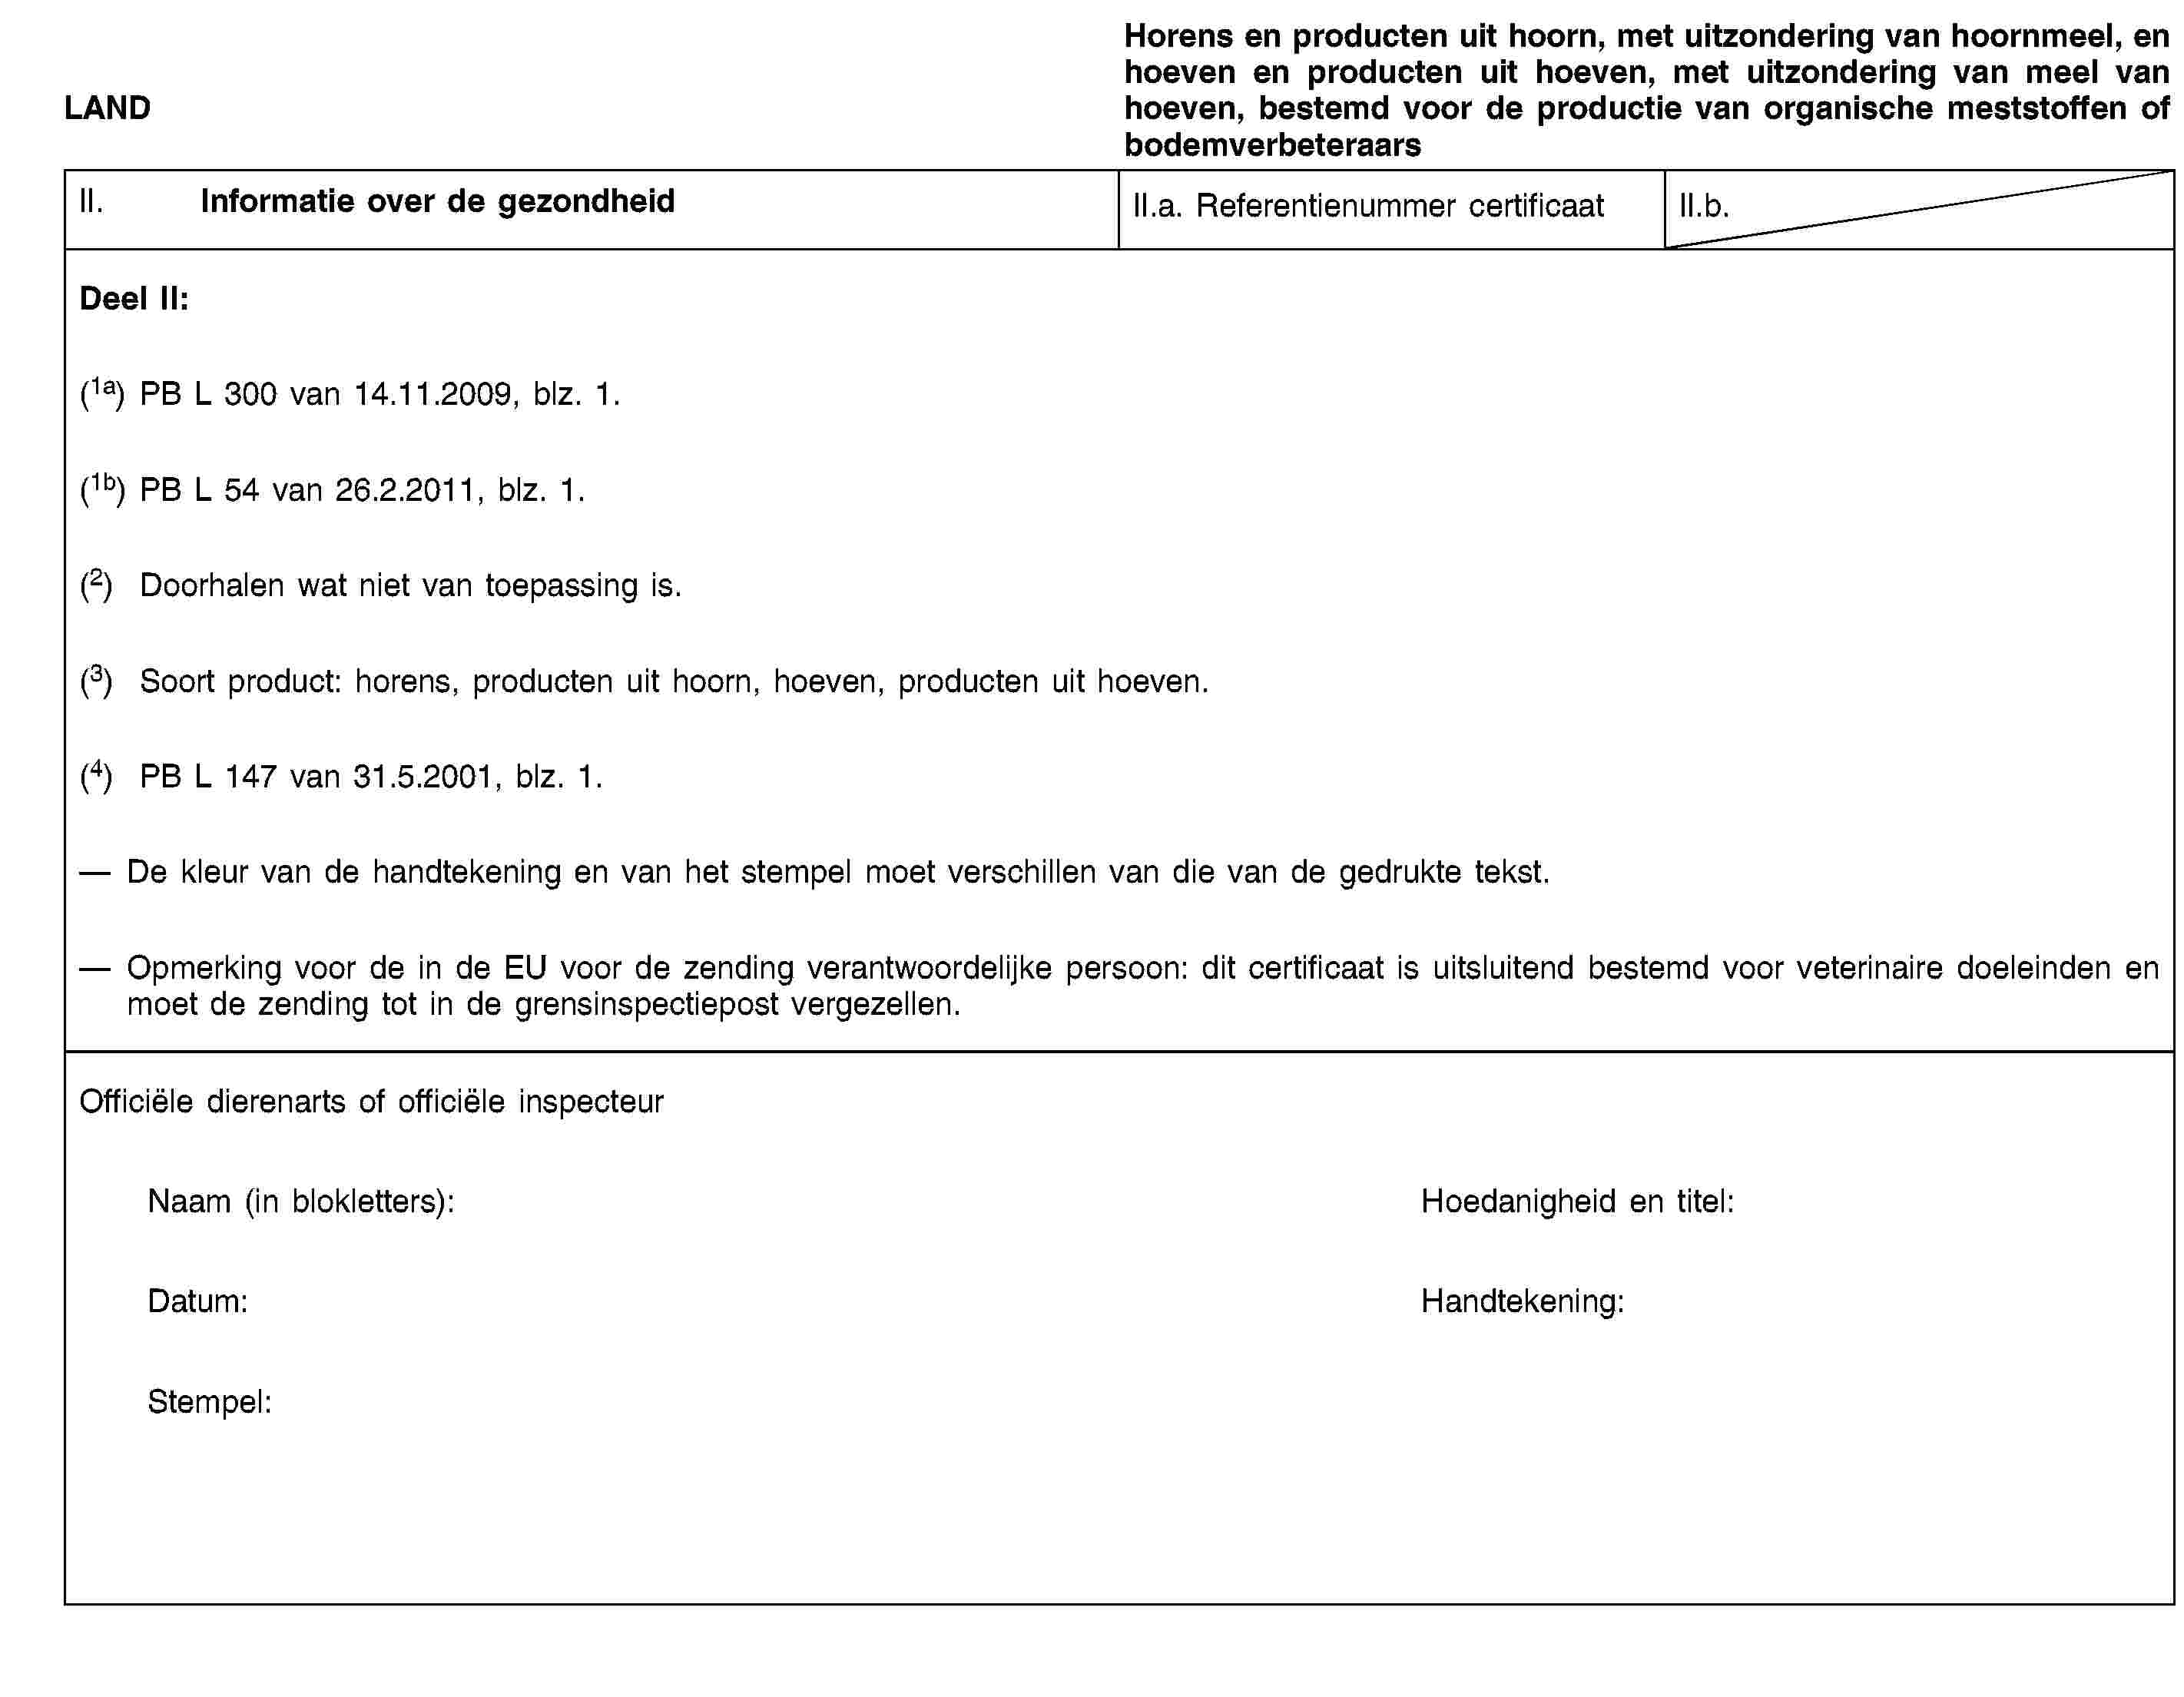 LANDHorens en producten uit hoorn, met uitzondering van hoornmeel, en hoeven en producten uit hoeven, met uitzondering van meel van hoeven, bestemd voor de productie van organische meststoffen of bodemverbeteraarsII. Informatie over de gezondheidII.a. Referentienummer certificaatII.b.Deel II:(1a) PB L 300 van 14.11.2009, blz. 1.(1b) PB L 54 van 26.2.2011, blz. 1.(2) Doorhalen wat niet van toepassing is.(3) Soort product: horens, producten uit hoorn, hoeven, producten uit hoeven.(4) PB L 147 van 31.5.2001, blz. 1.De kleur van de handtekening en van het stempel moet verschillen van die van de gedrukte tekst.Opmerking voor de in de EU voor de zending verantwoordelijke persoon: dit certificaat is uitsluitend bestemd voor veterinaire doeleinden en moet de zending tot in de grensinspectiepost vergezellen.Officiële dierenarts of officiële inspecteurNaam (in blokletters):Hoedanigheid en titel:Datum:Handtekening:Stempel: